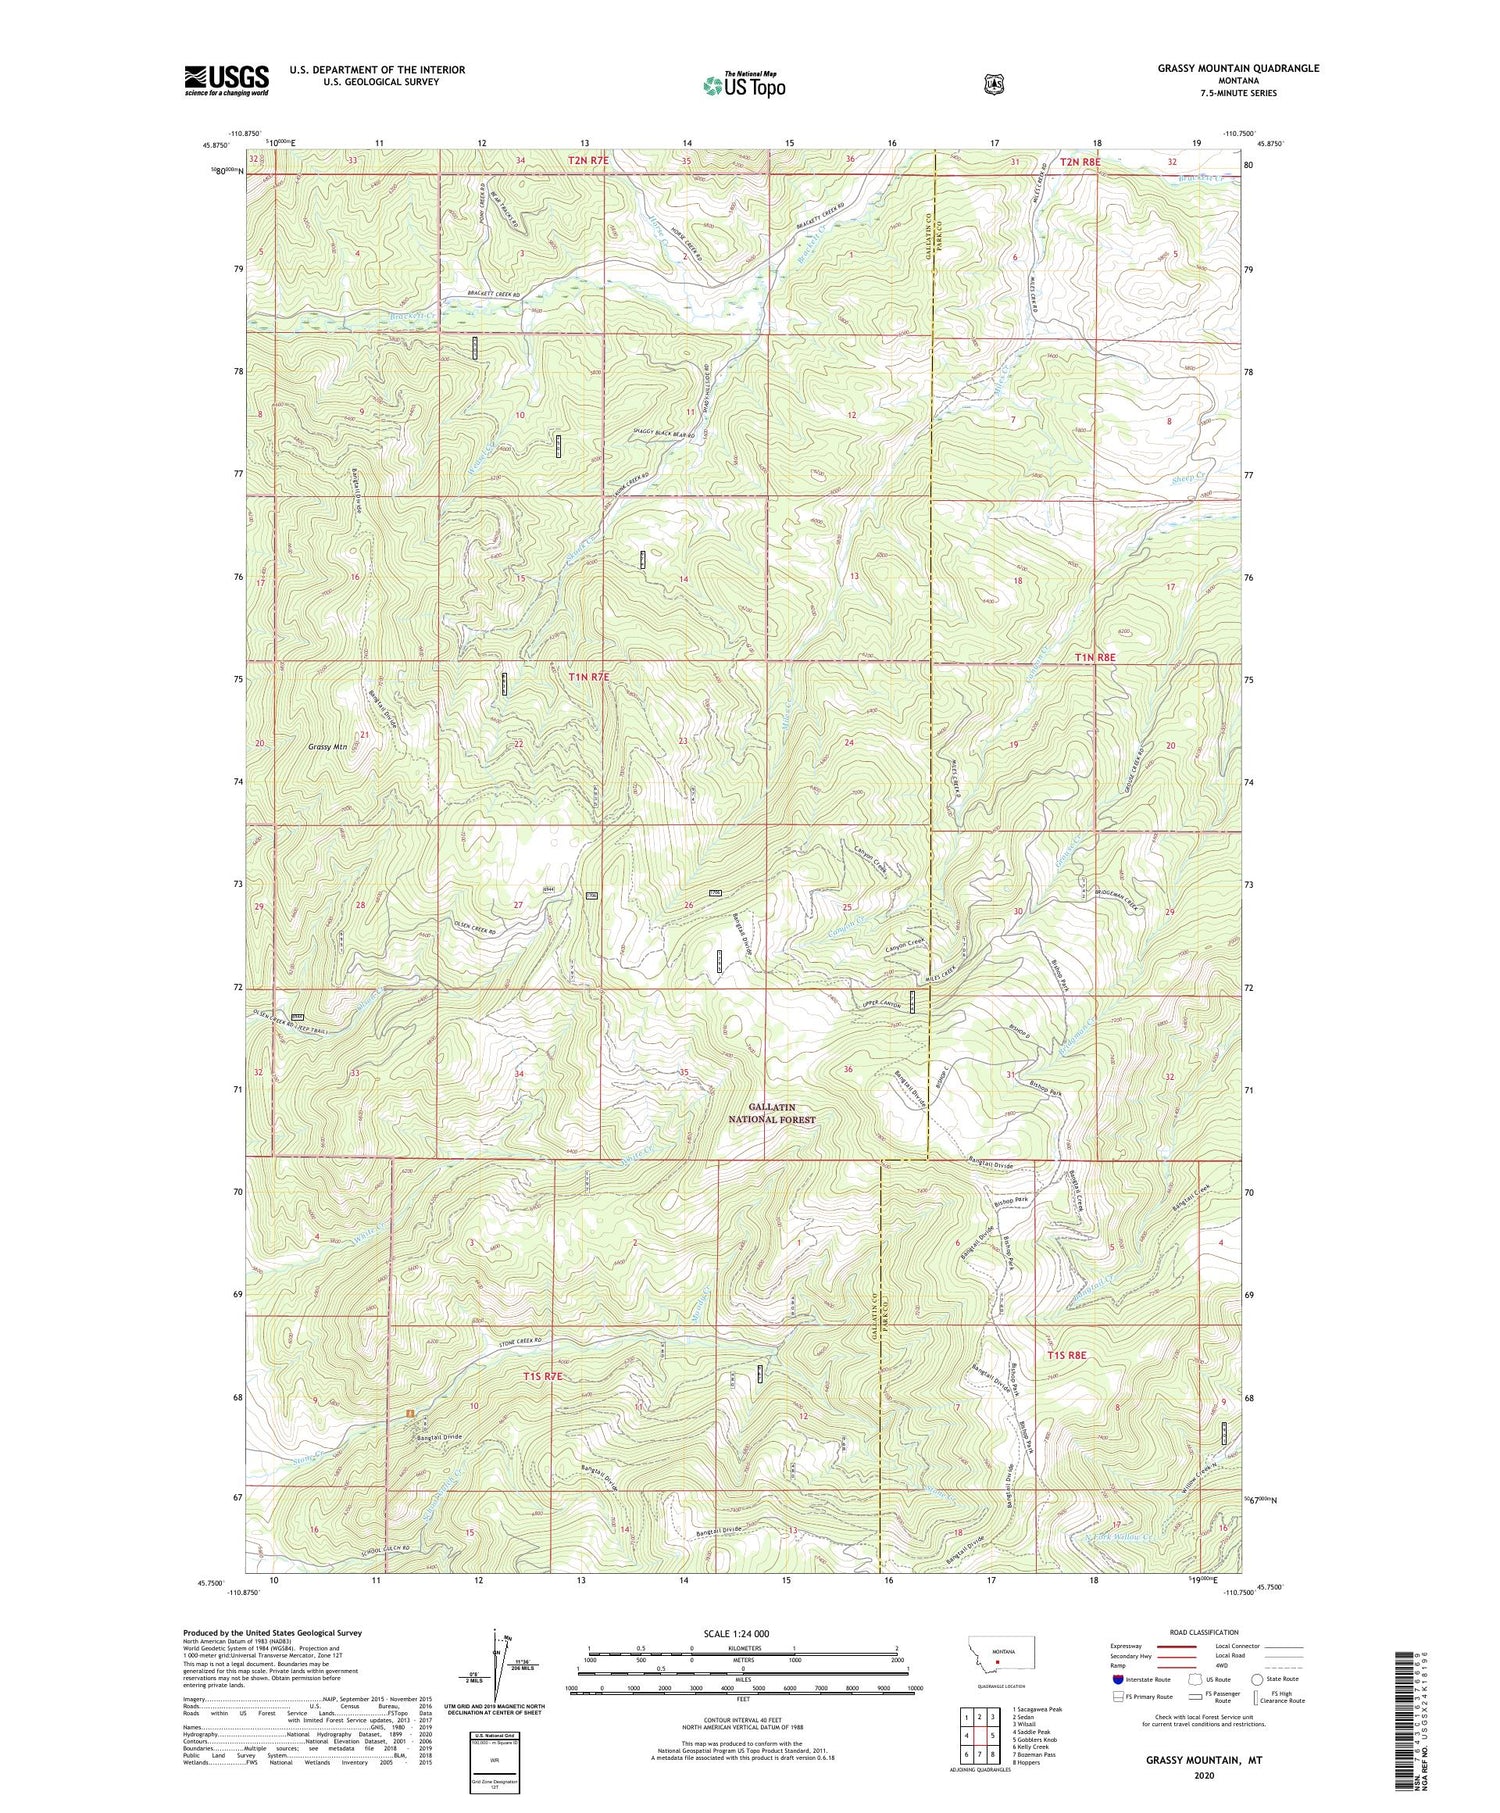 Grassy Mountain Montana US Topo Map Image